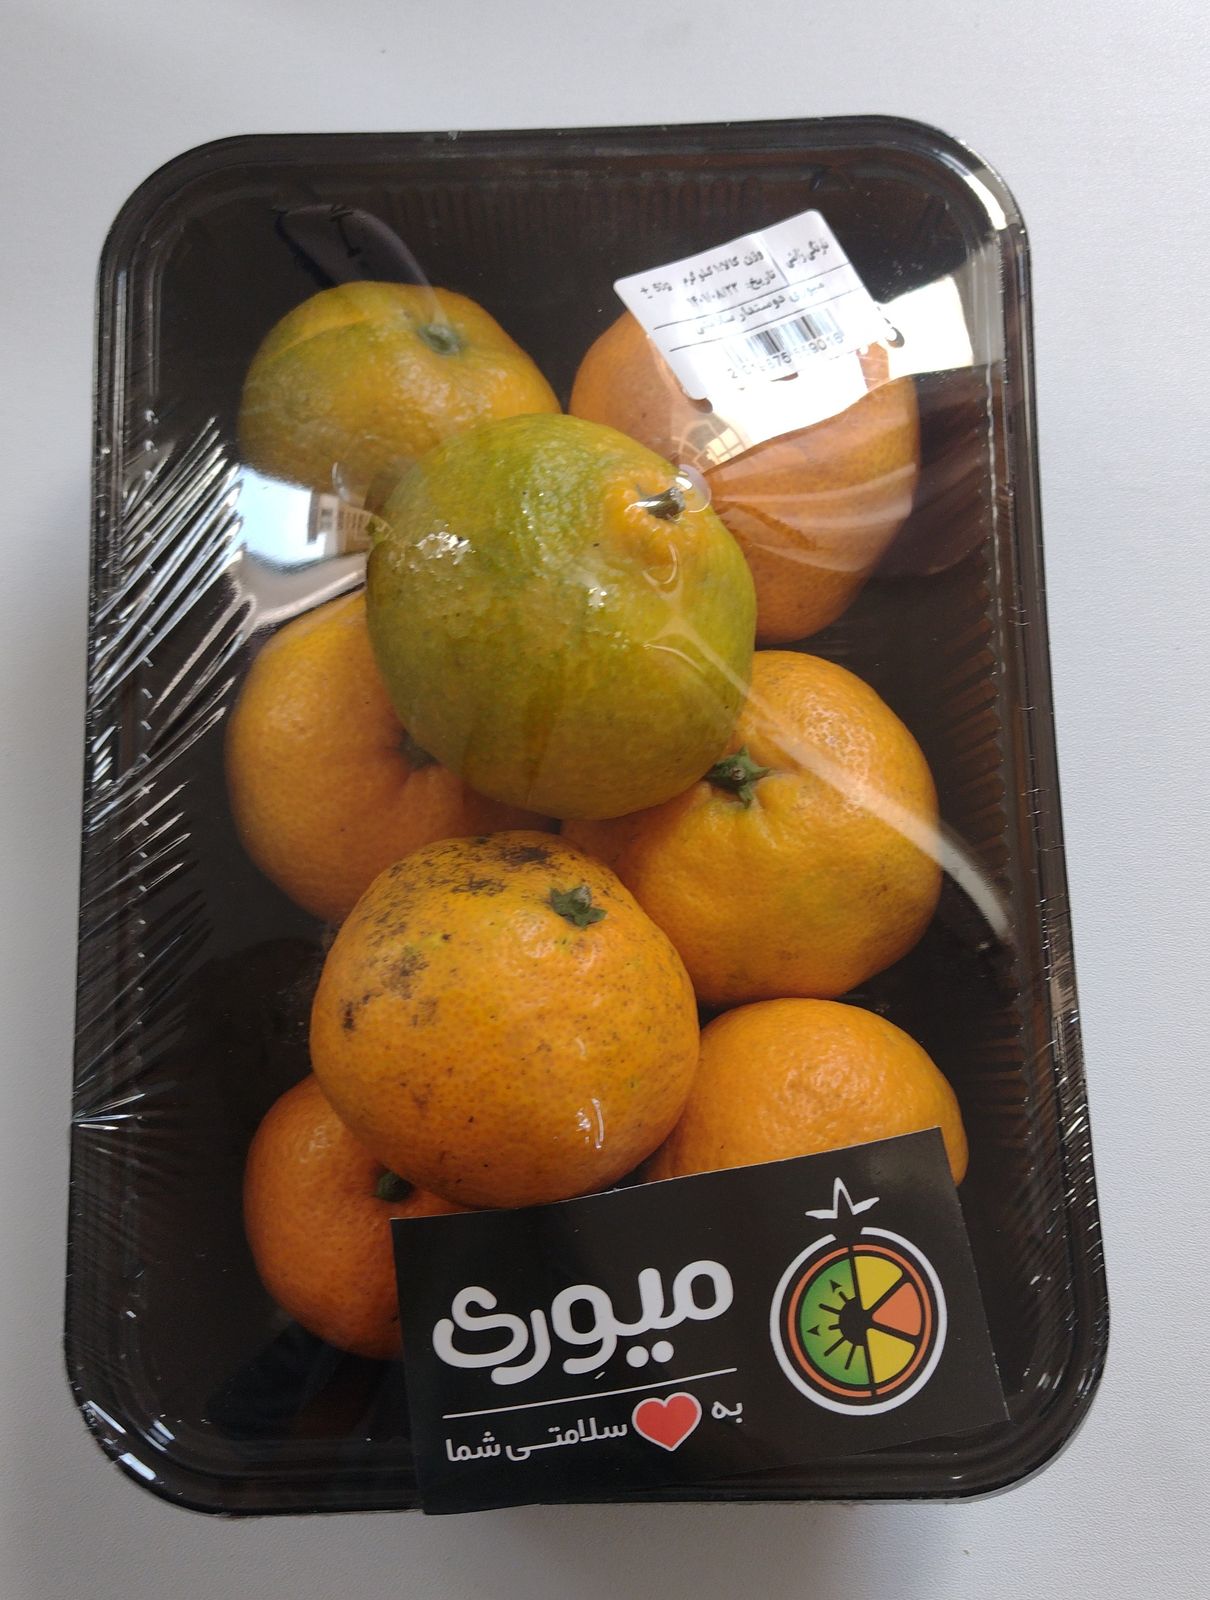 نظرات خریداران در مورد نارنگی ژاپنی میوری - 1 کیلوگرم + مزایا و معایب